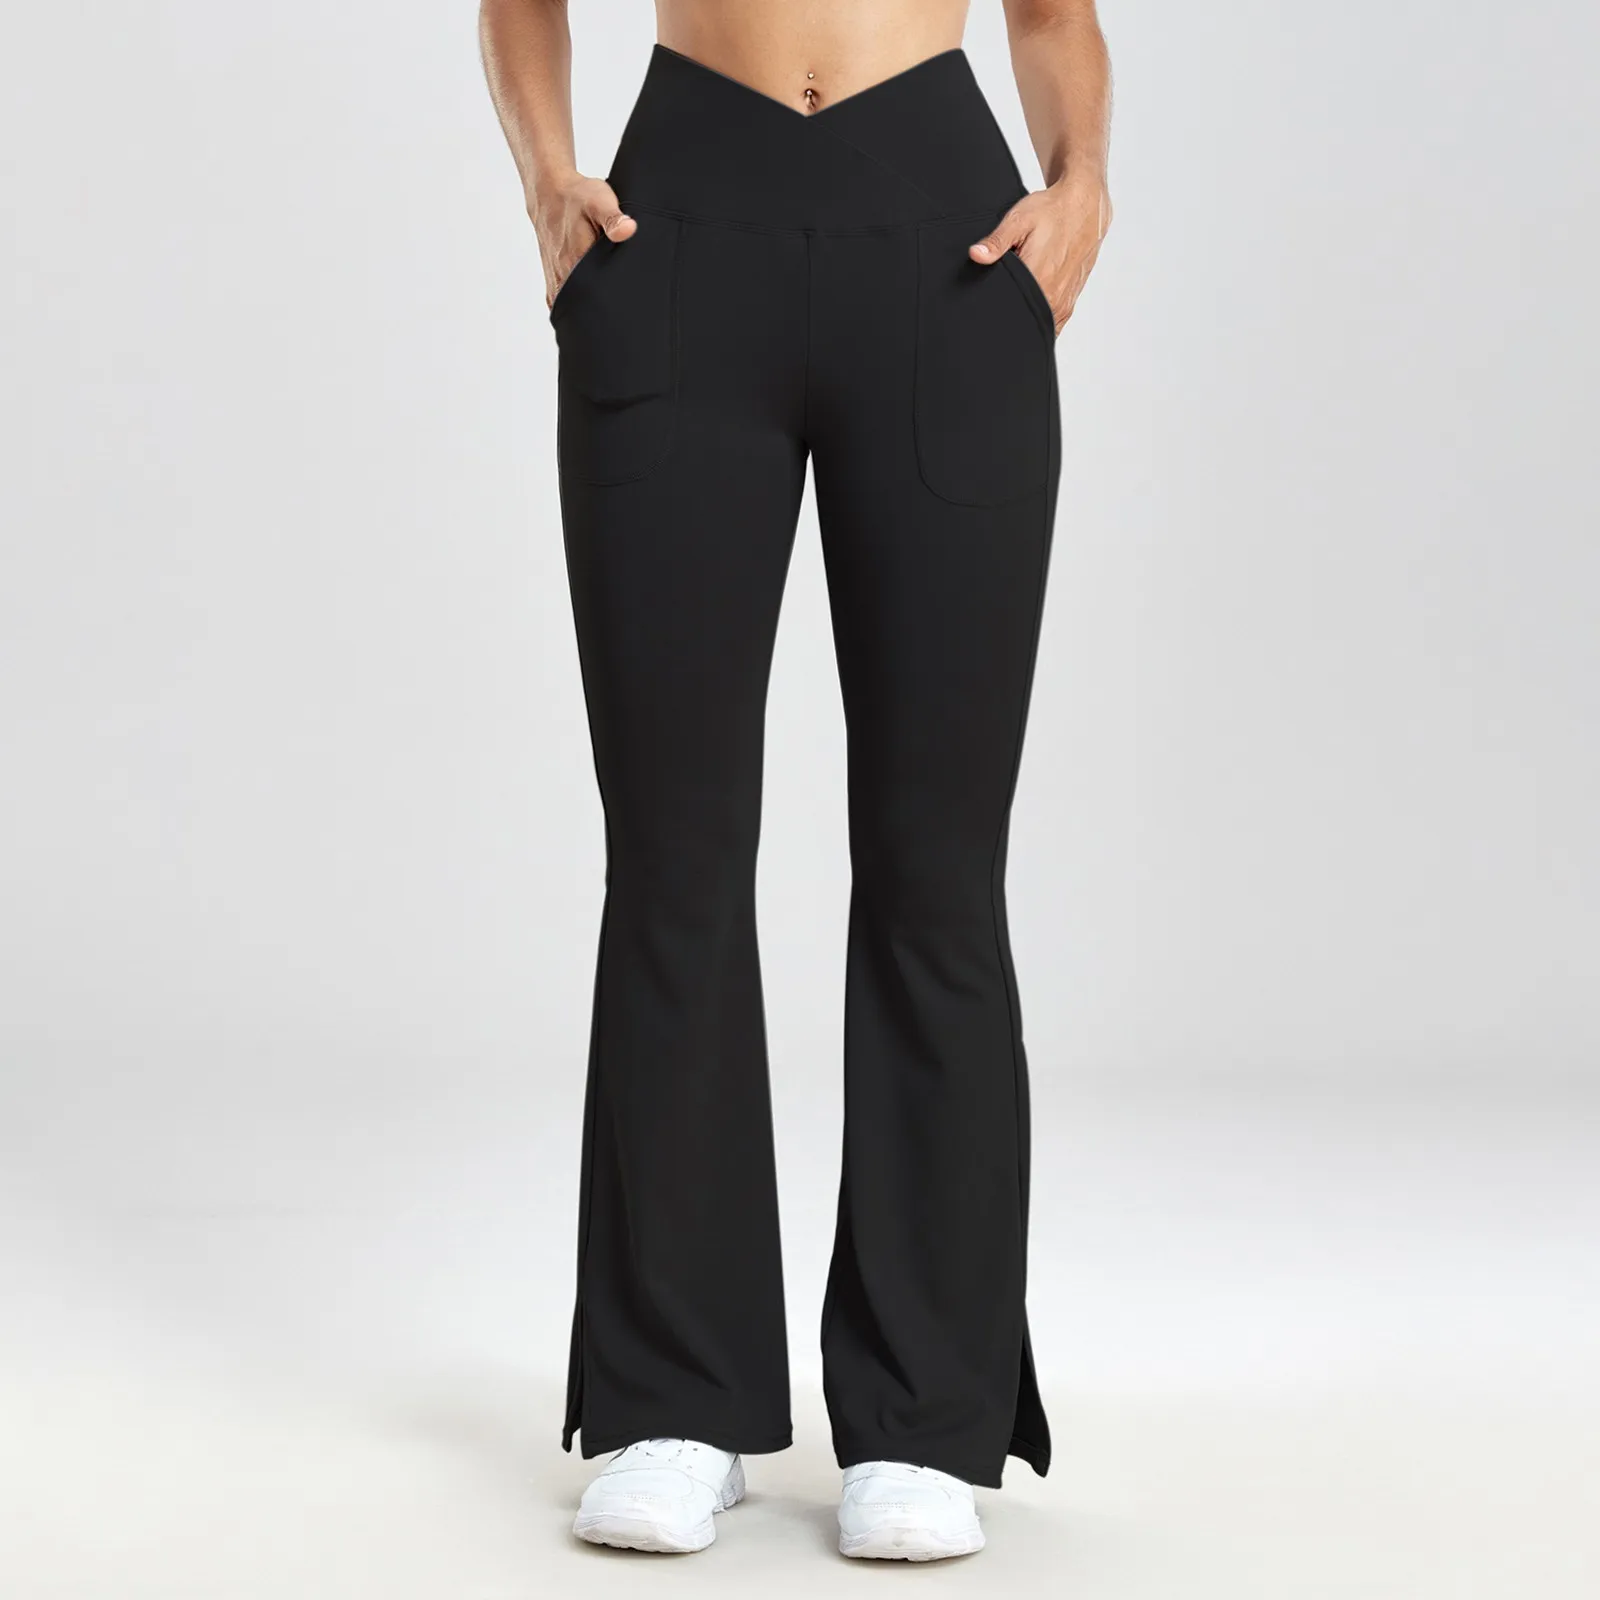 

Женские облегающие брюки телесного цвета с широкими штанинами, с приподнятыми бедрами и высокой талией, повседневные расклешенные брюки, спортивные штаны для фитнеса и йоги с низким вырезом